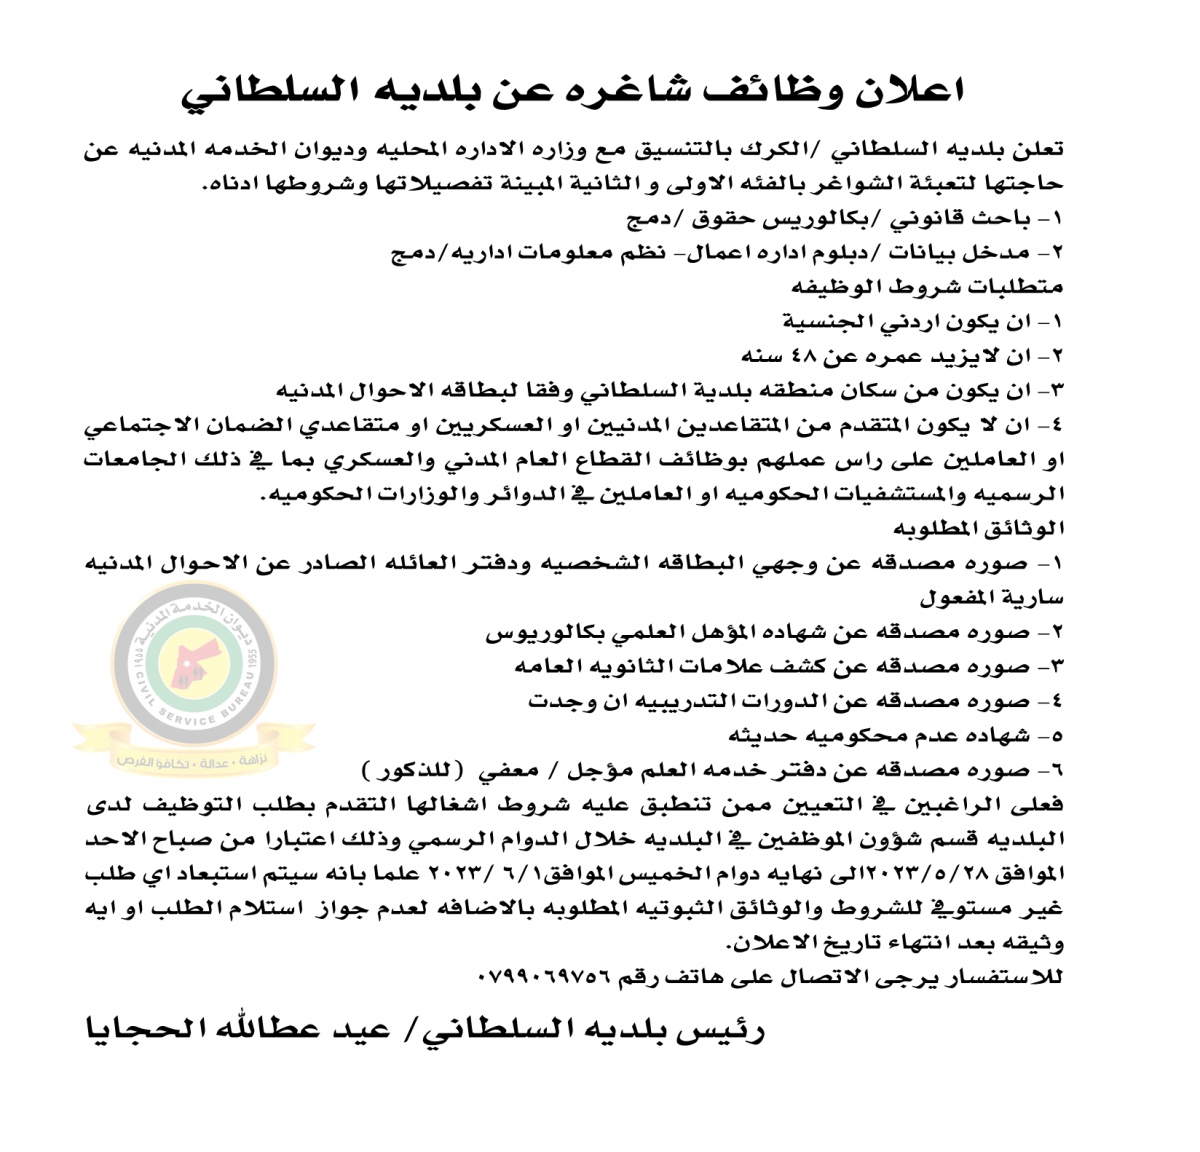 اعلان وظائف شاغرة بالفئة الأولى والثانية صادرعن بلدية السلطاني / الكرك